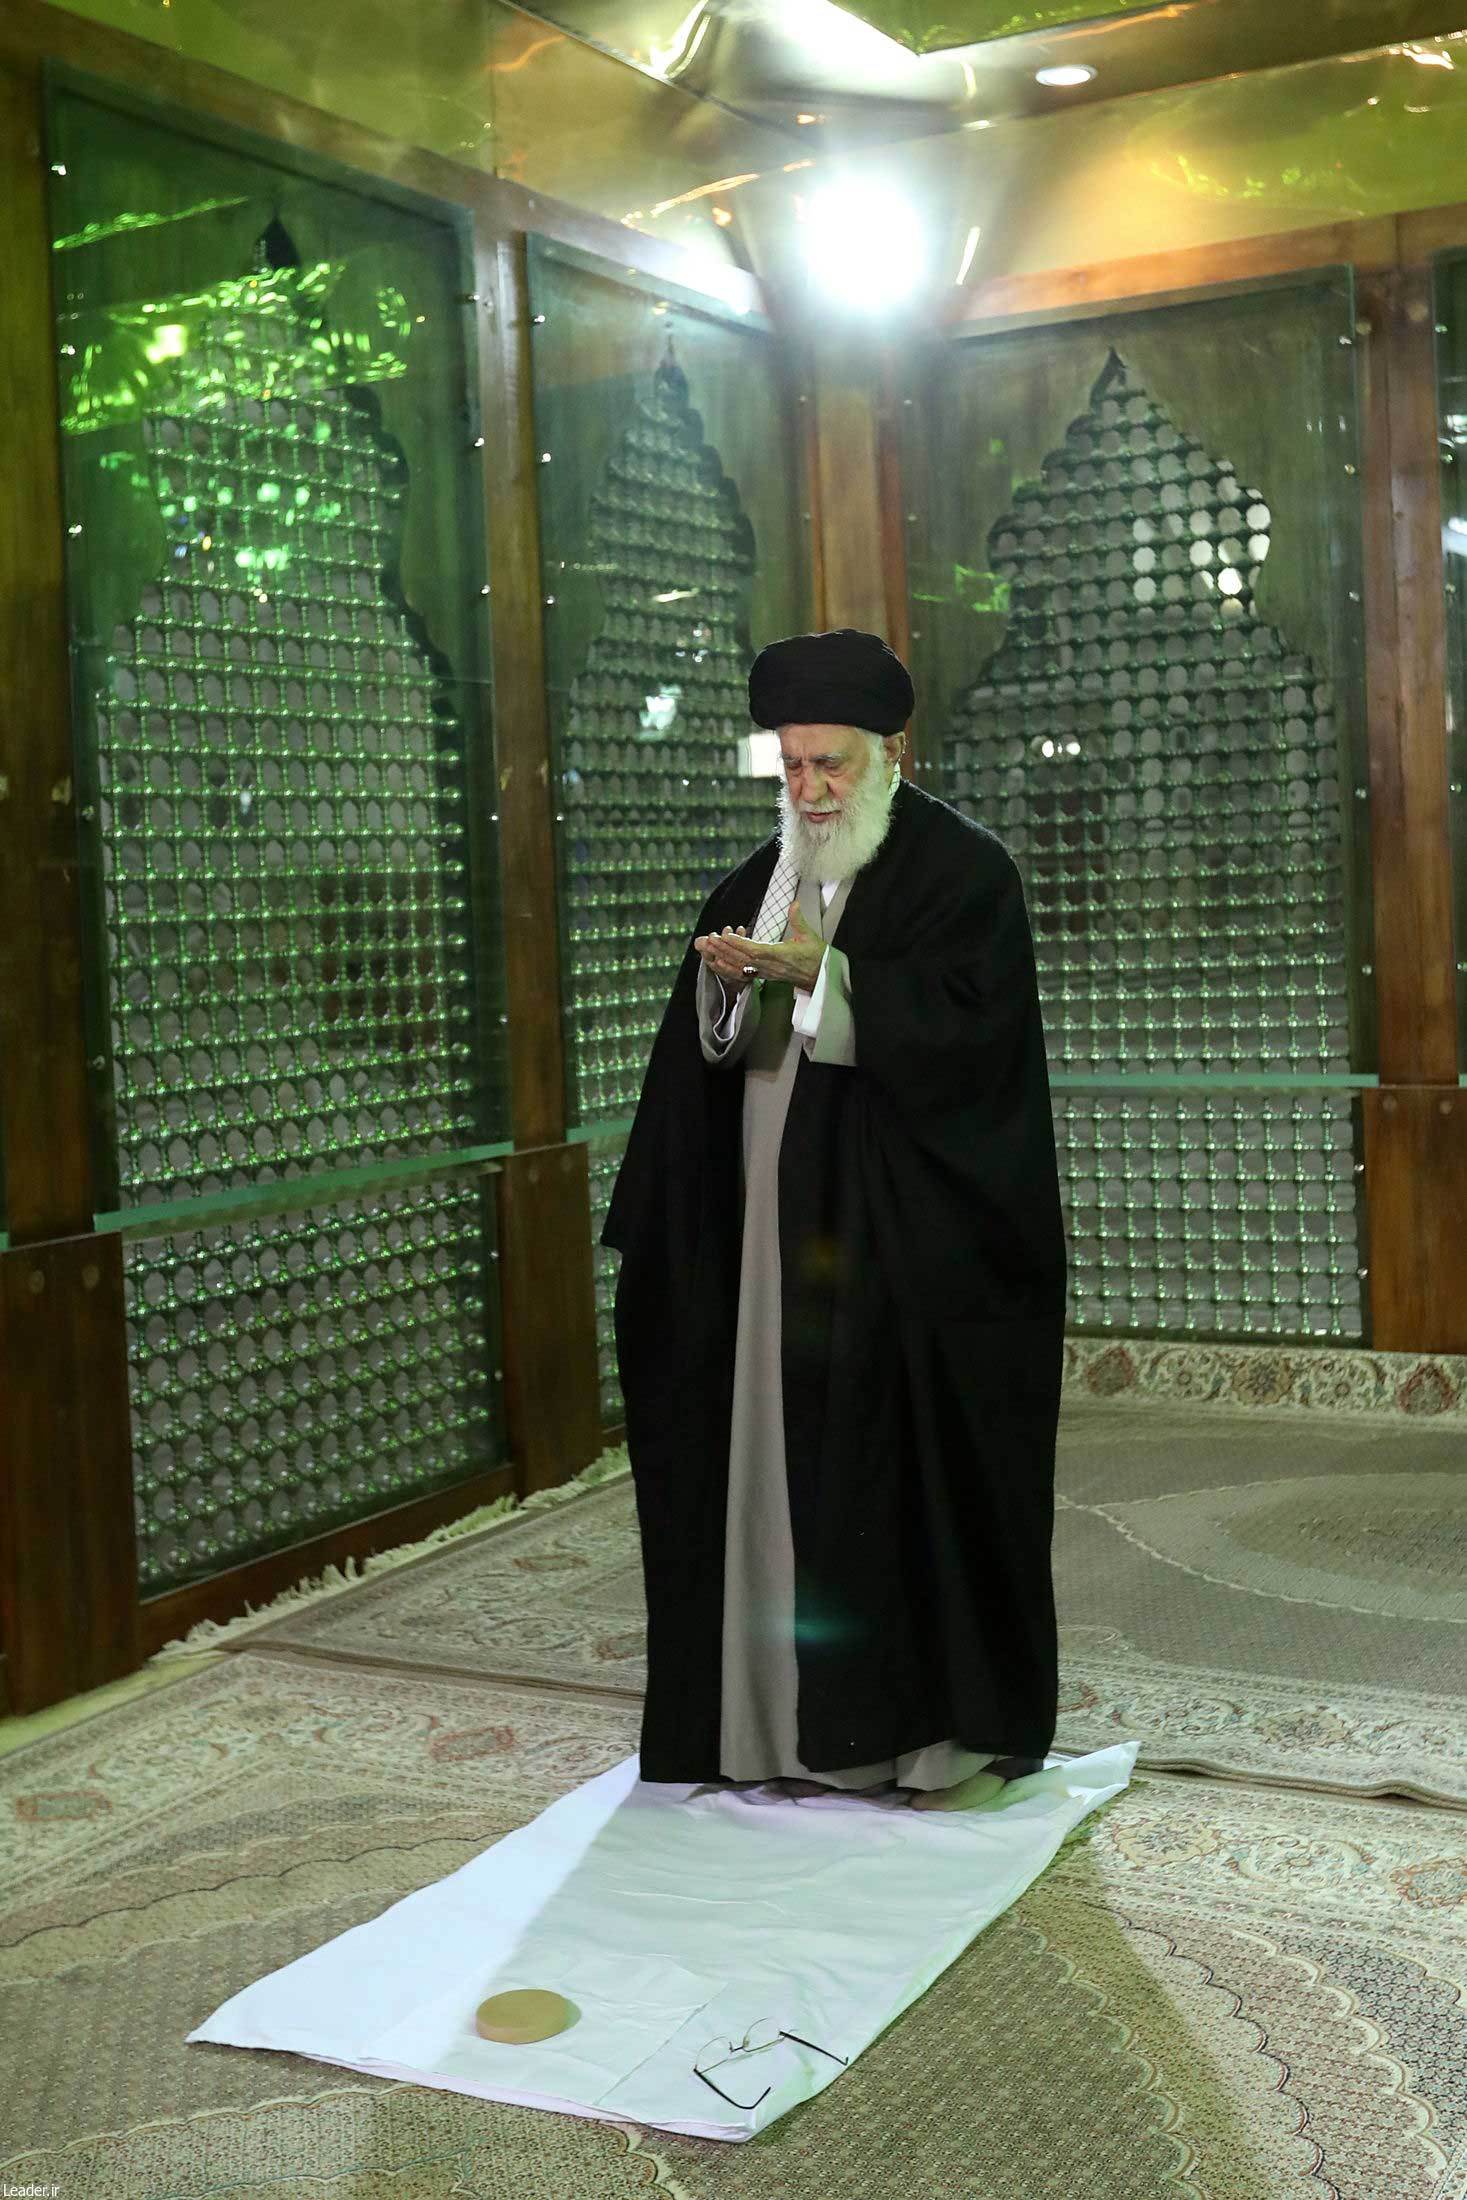 رهبر انقلاب اسلامی در مرقد امام خمینی(ره) وگلزار شهدا حضور یافتند +عکس